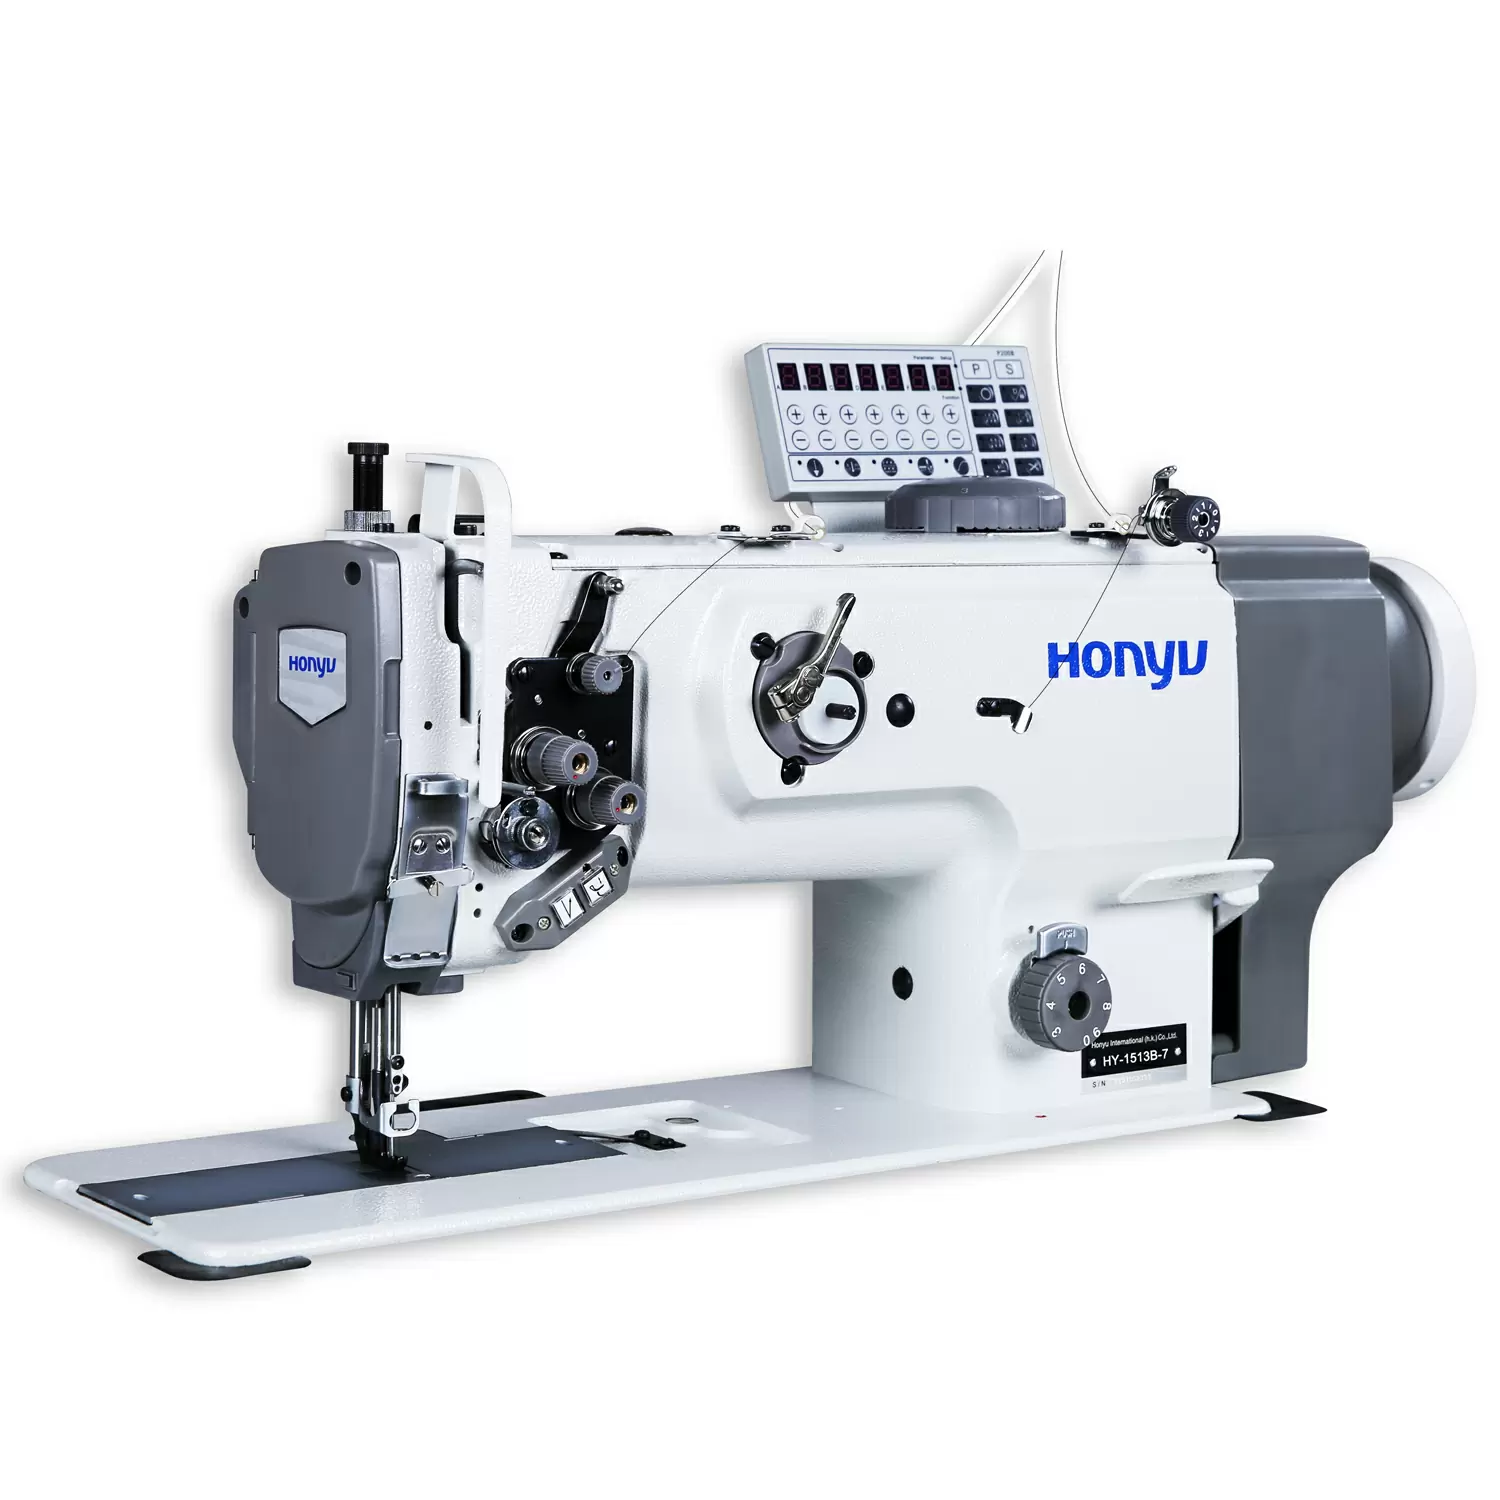 カメラ フィルムカメラ Honyu Products | Sewing Machine Factory, Electronic Sewing Machine